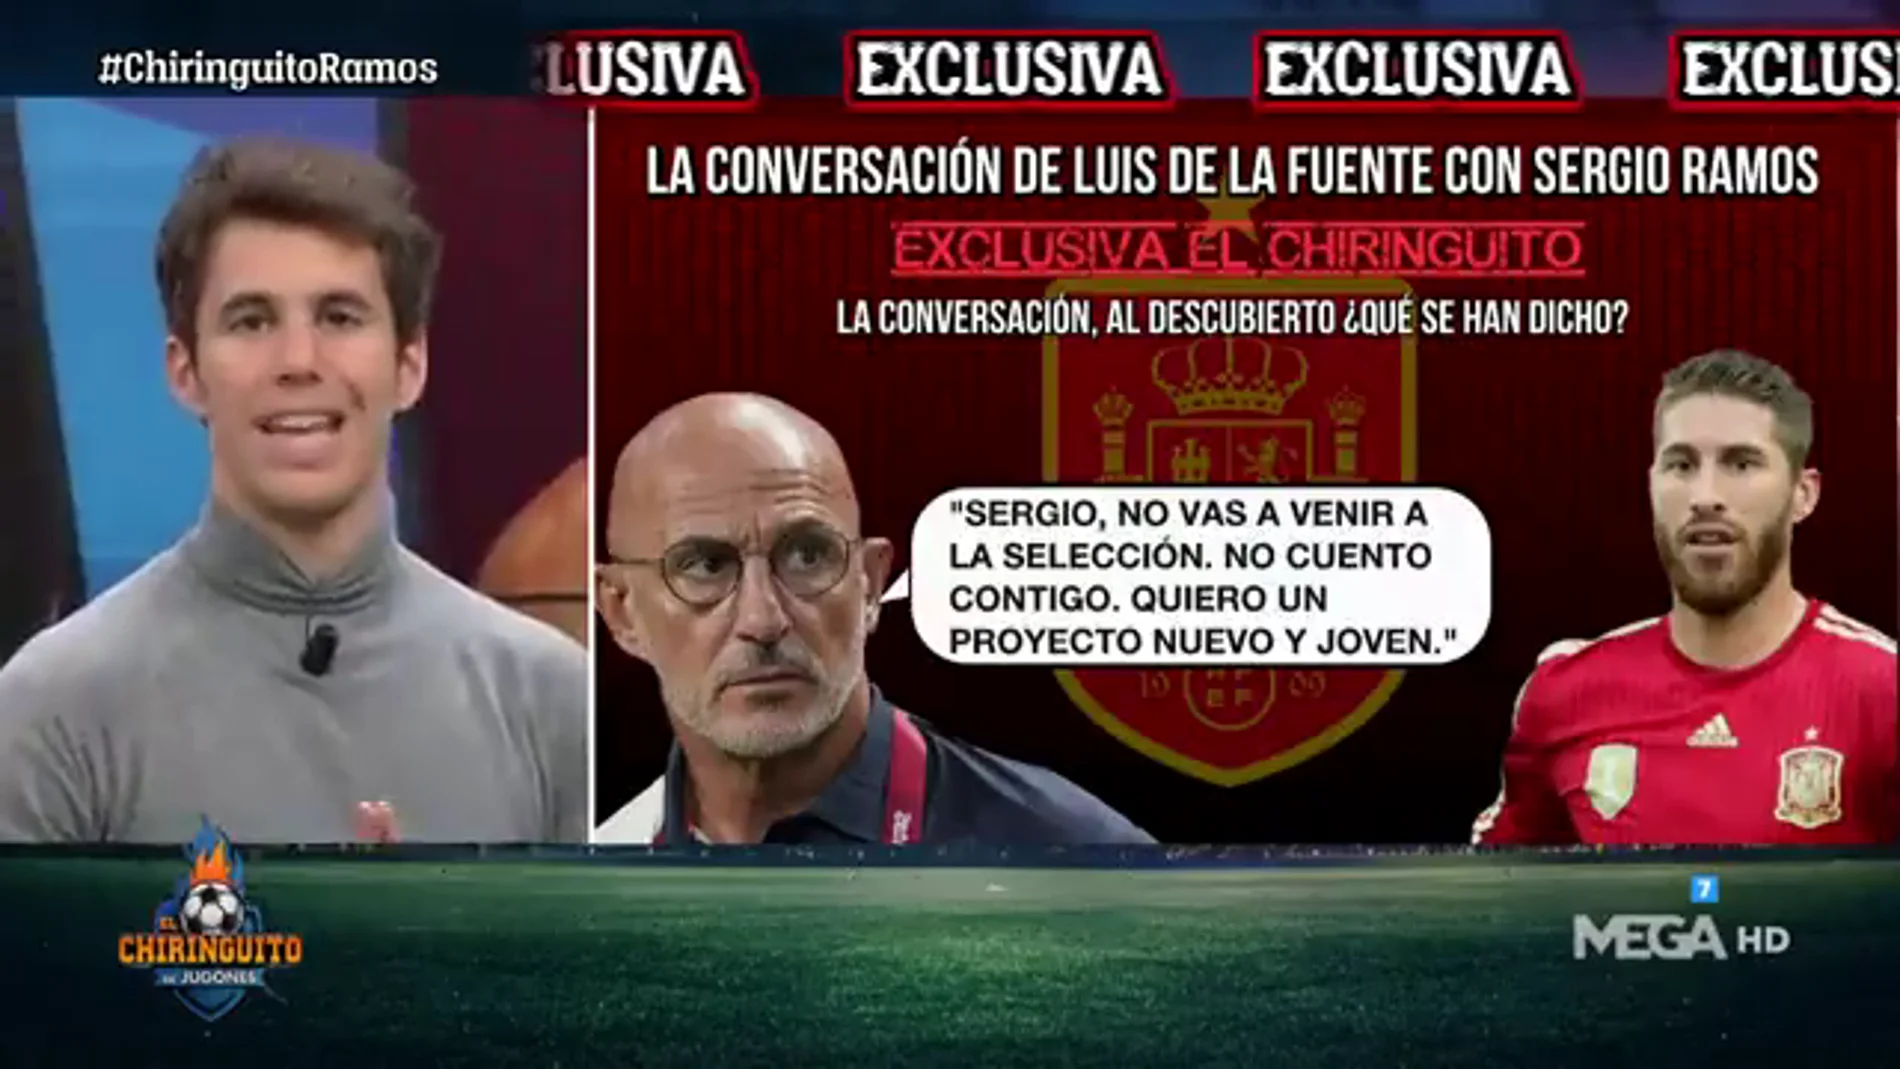 Exclusiva 'El Chiringuito': así fue la conversación entre Luis de la Fuente y Sergio Ramos